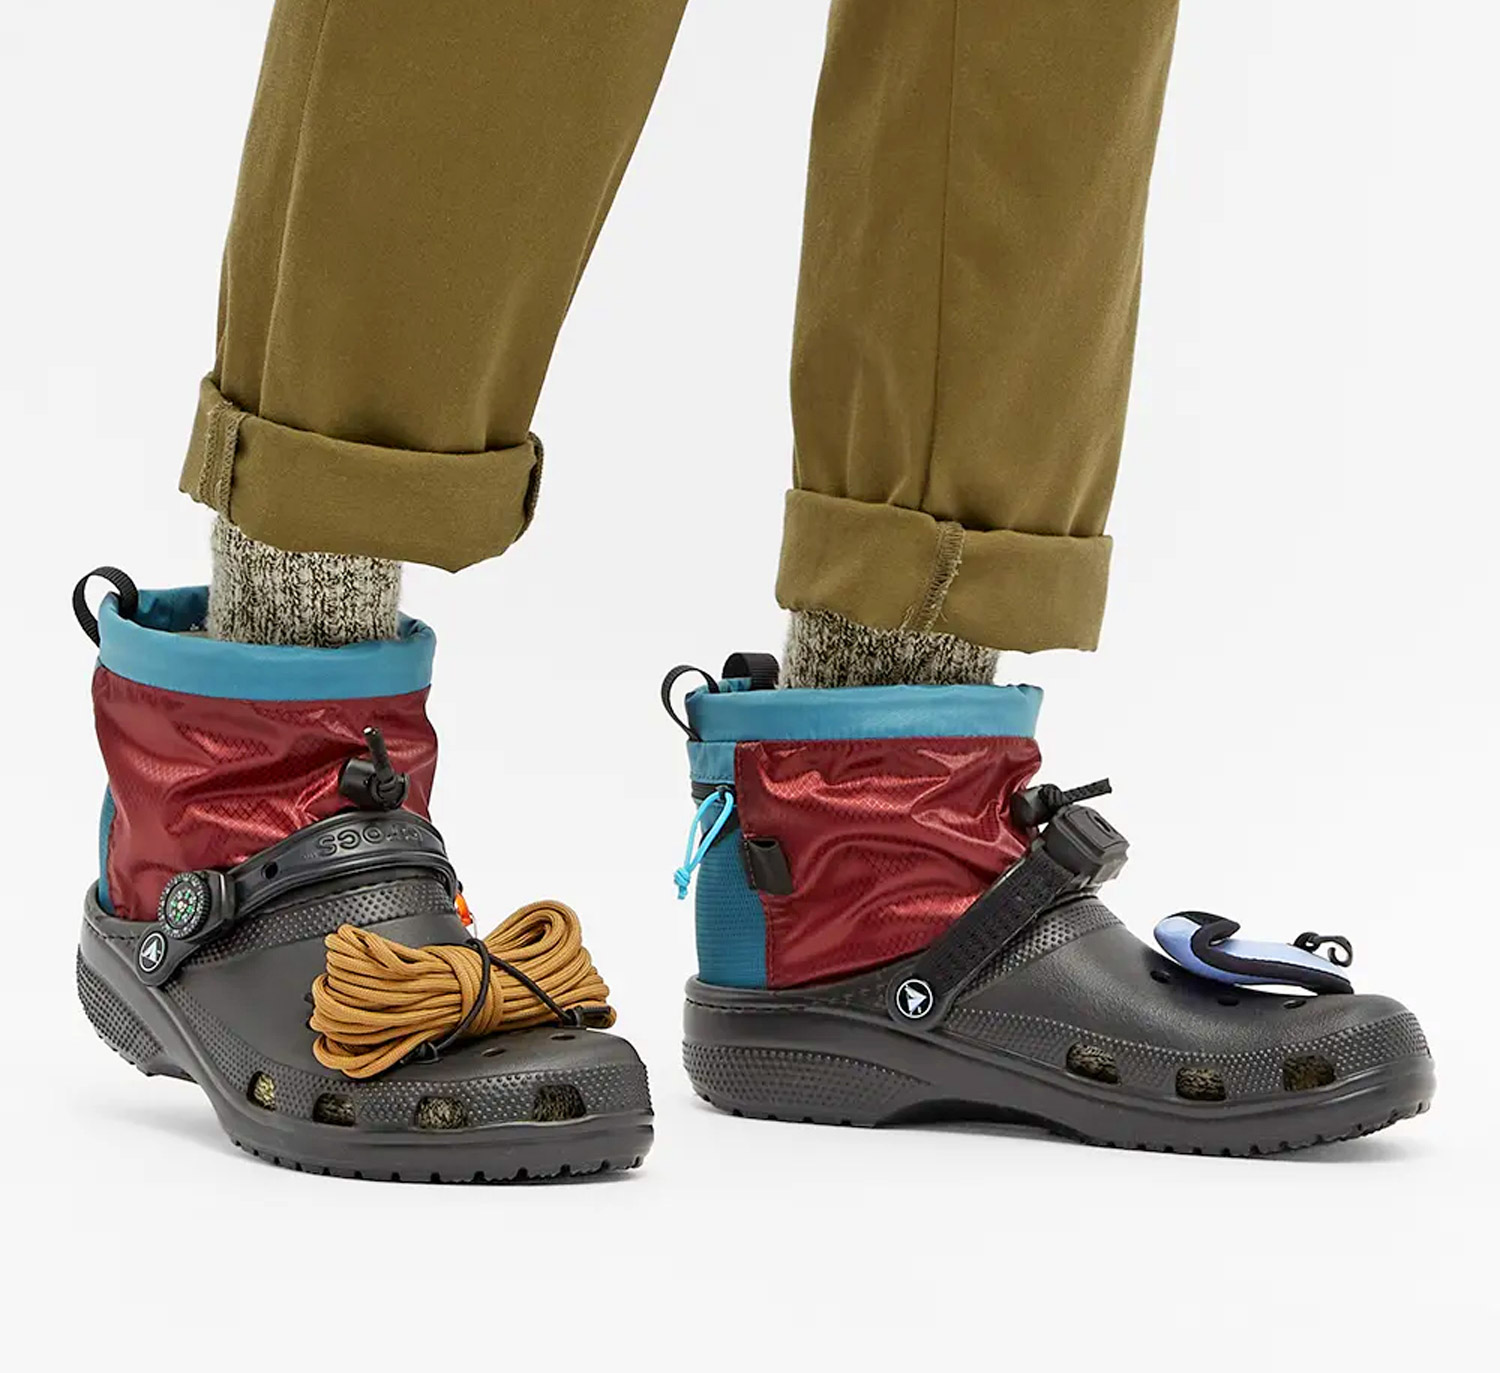 croc hiking boots